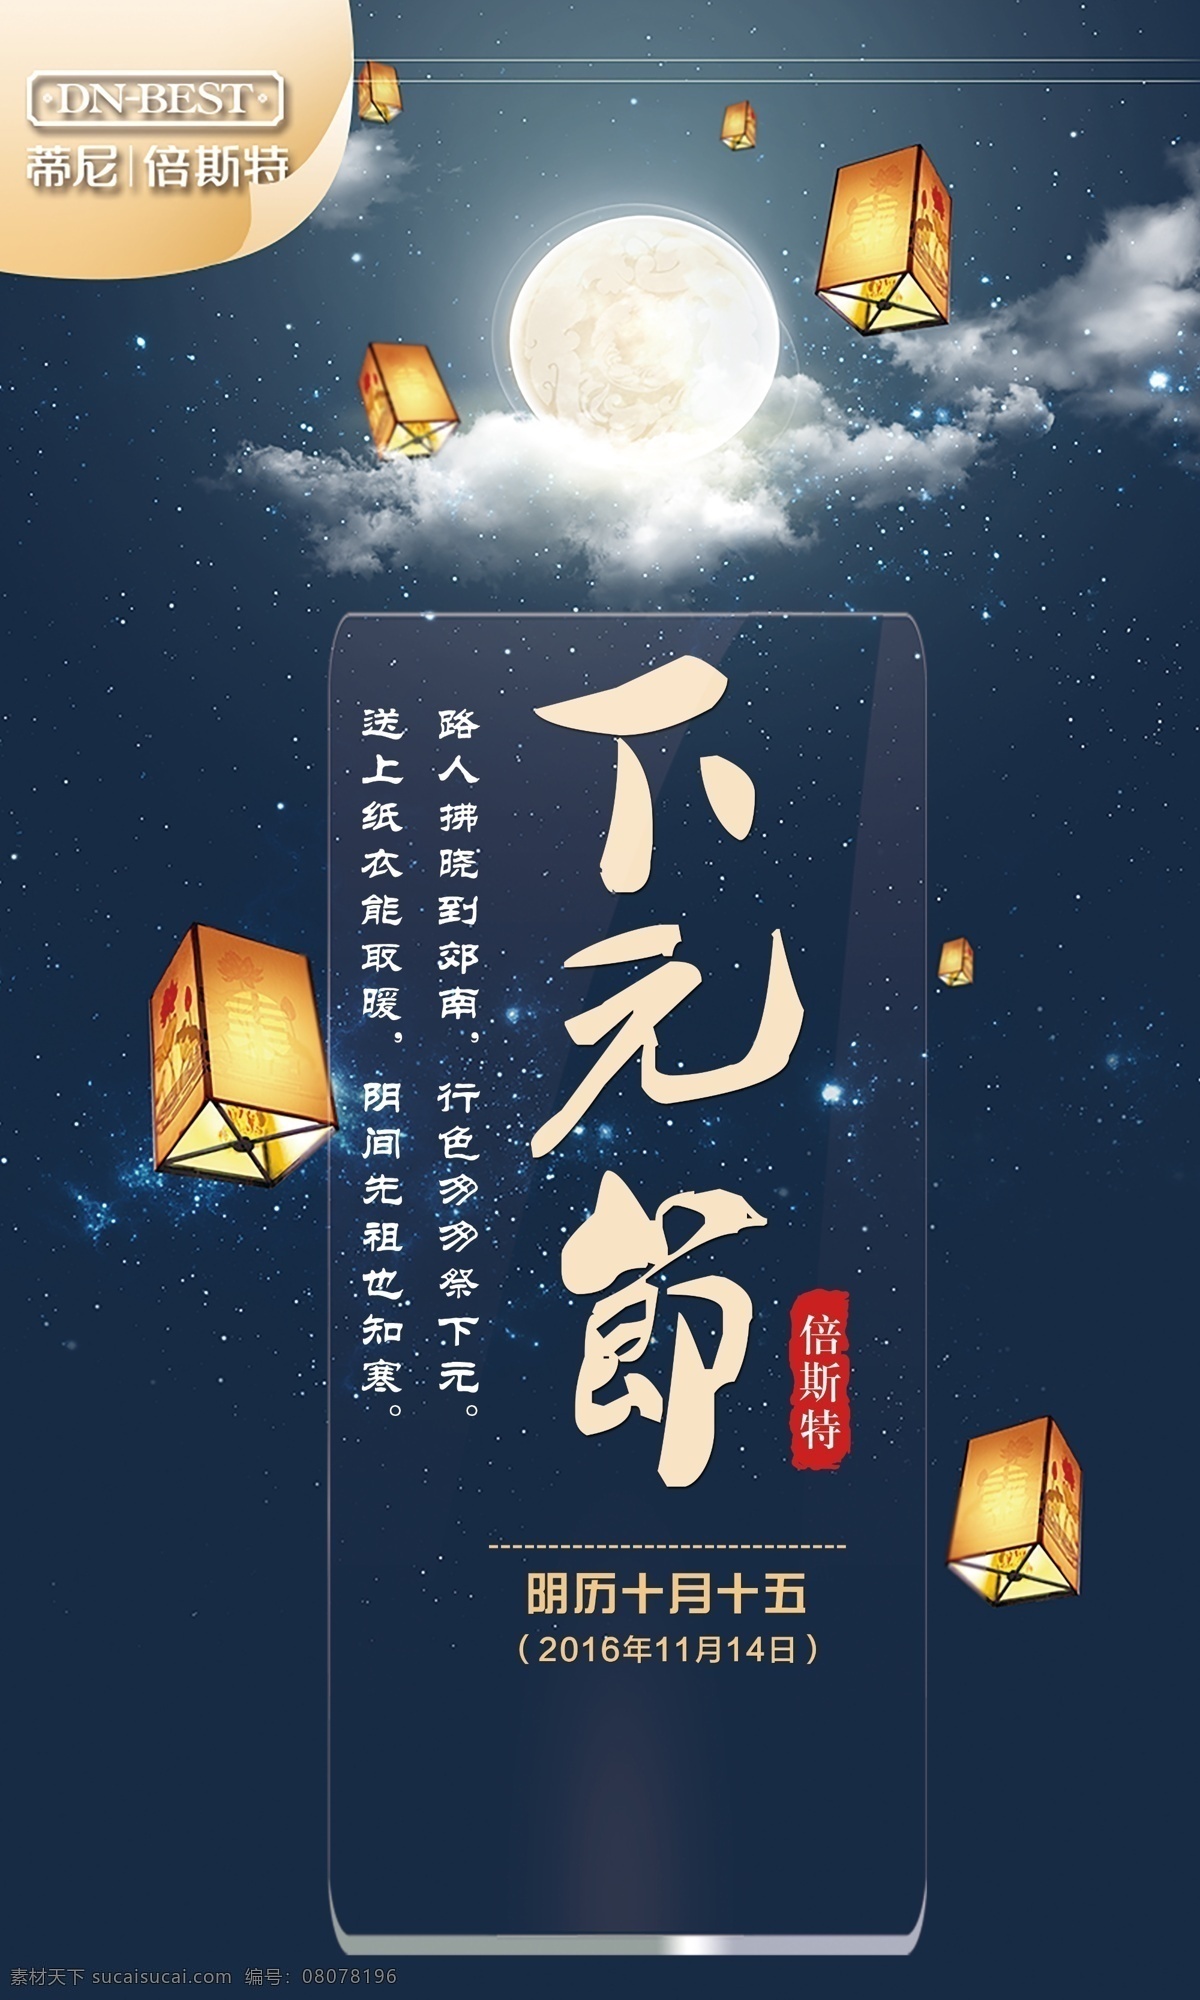 中国 传统节日 孔明灯 下元 节 主题节日 下元节海报